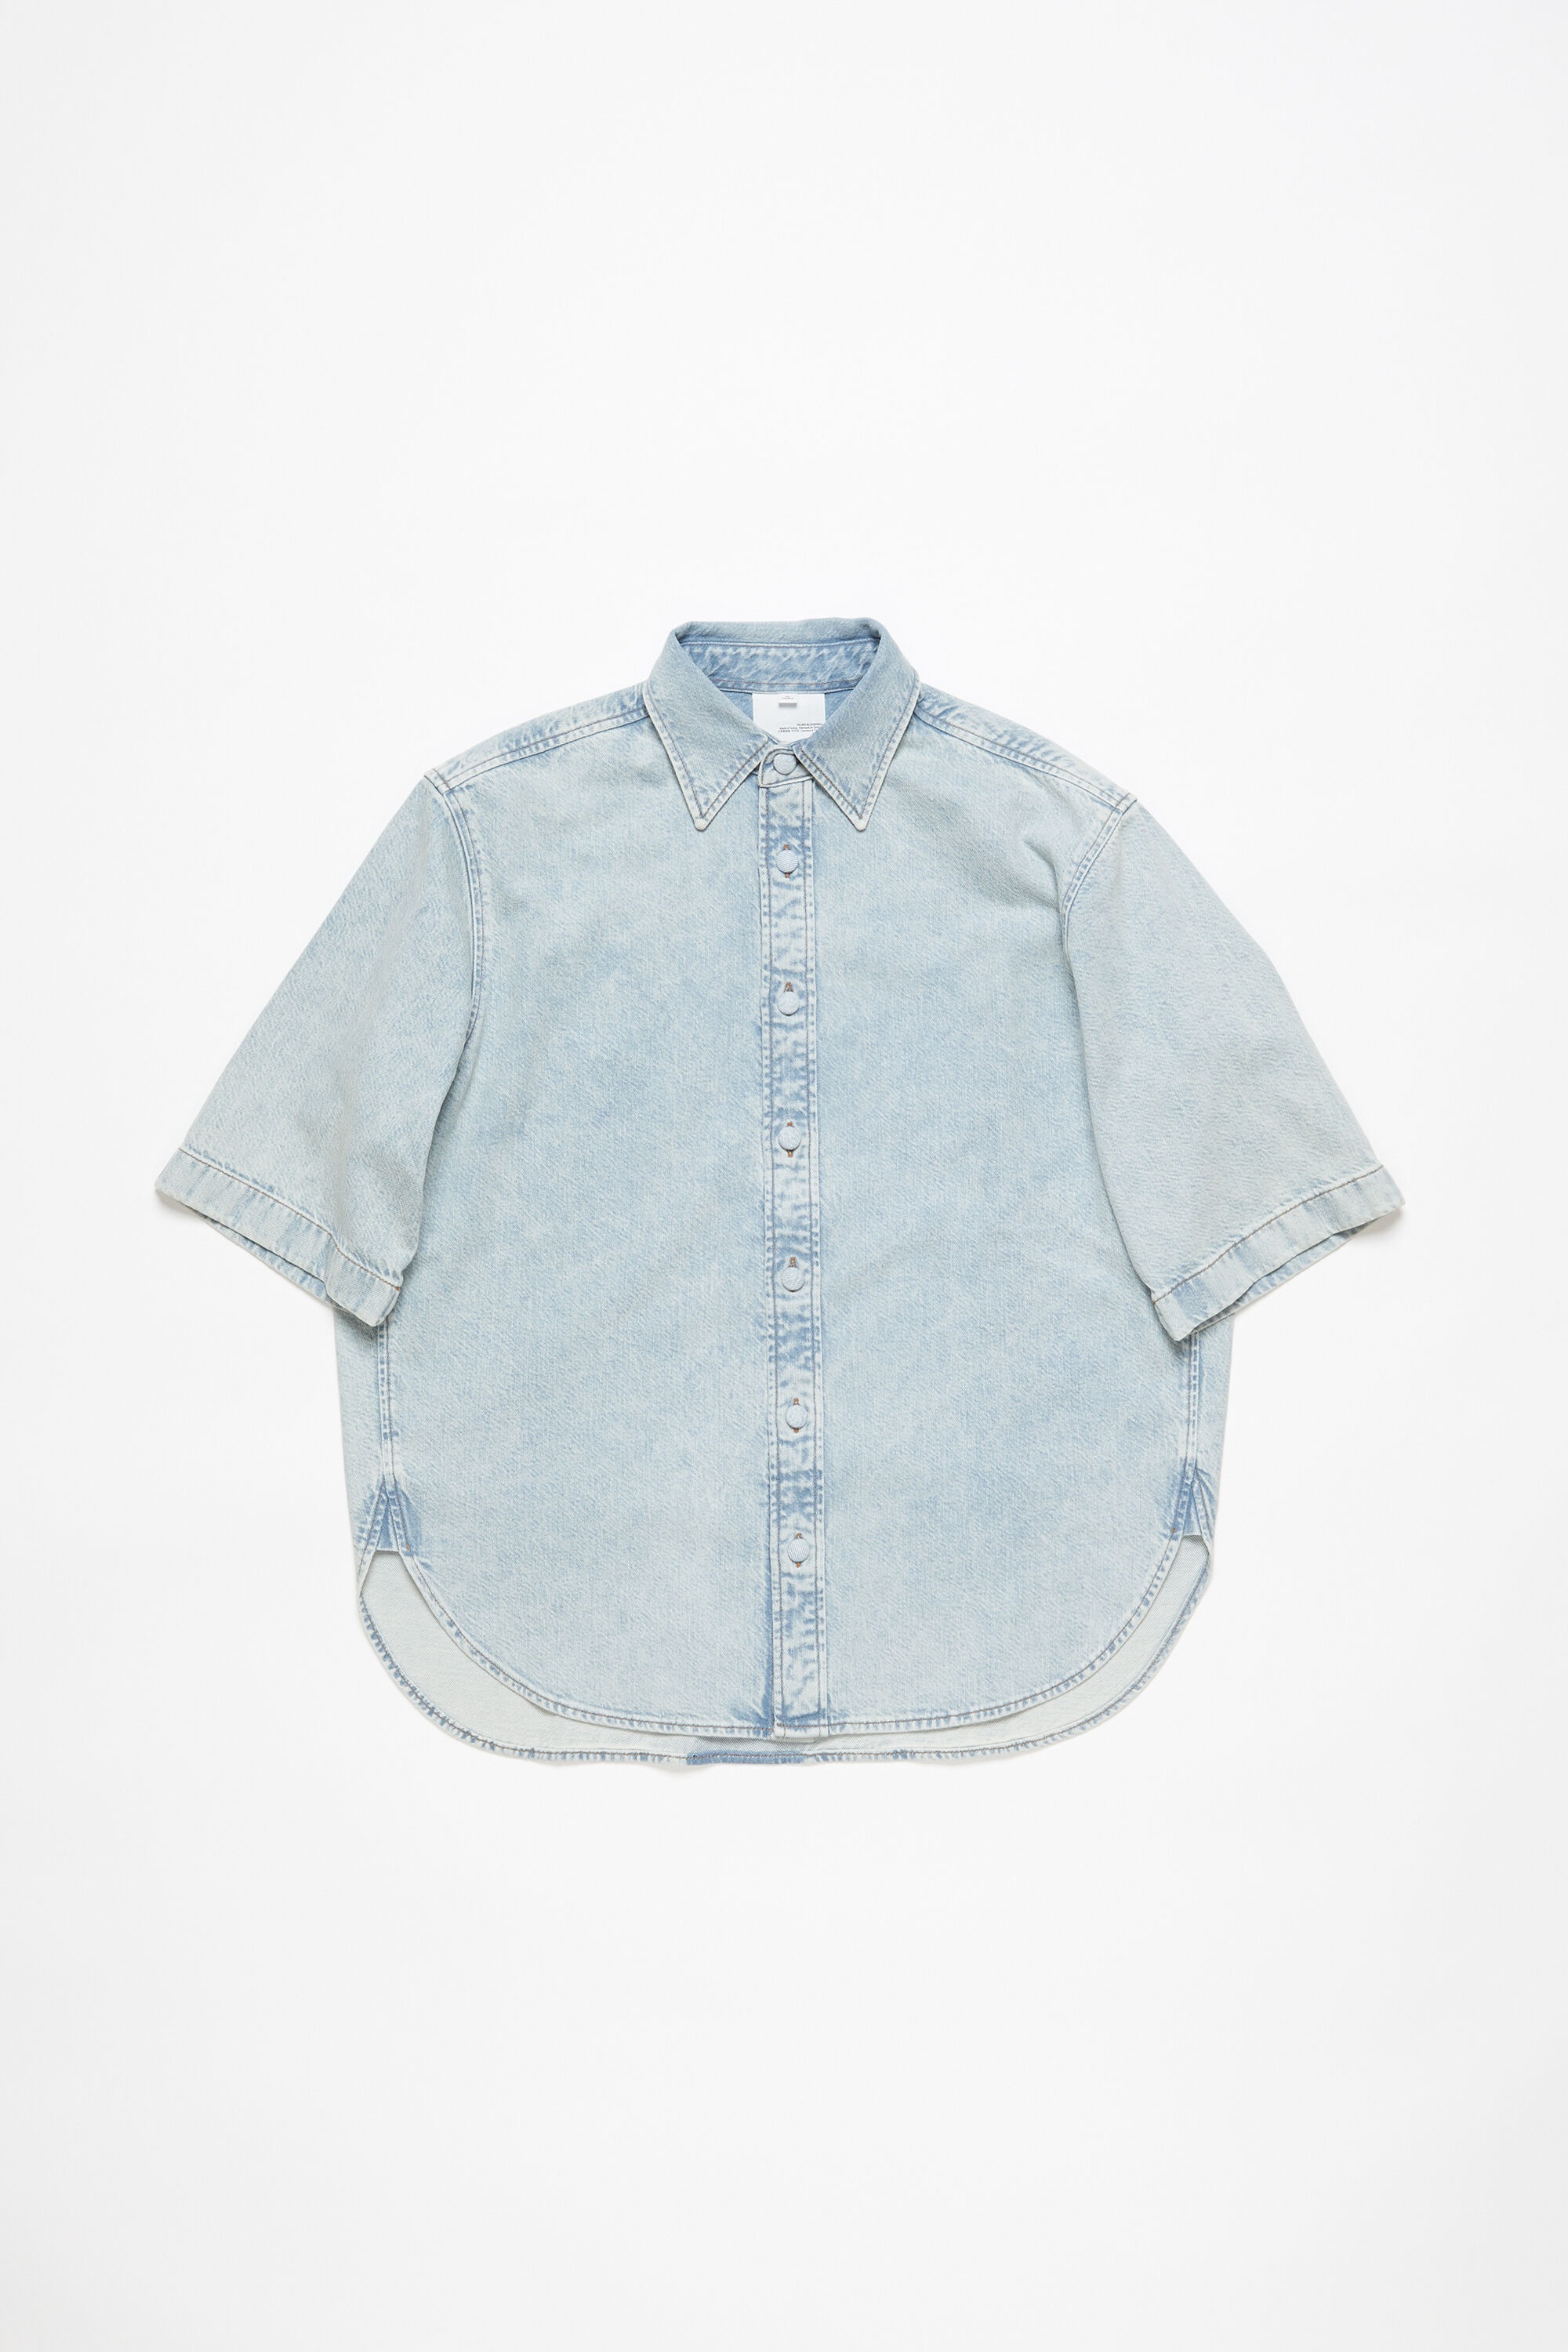 Denim button-up shirt - Relaxed fit - Indigo blue - 6